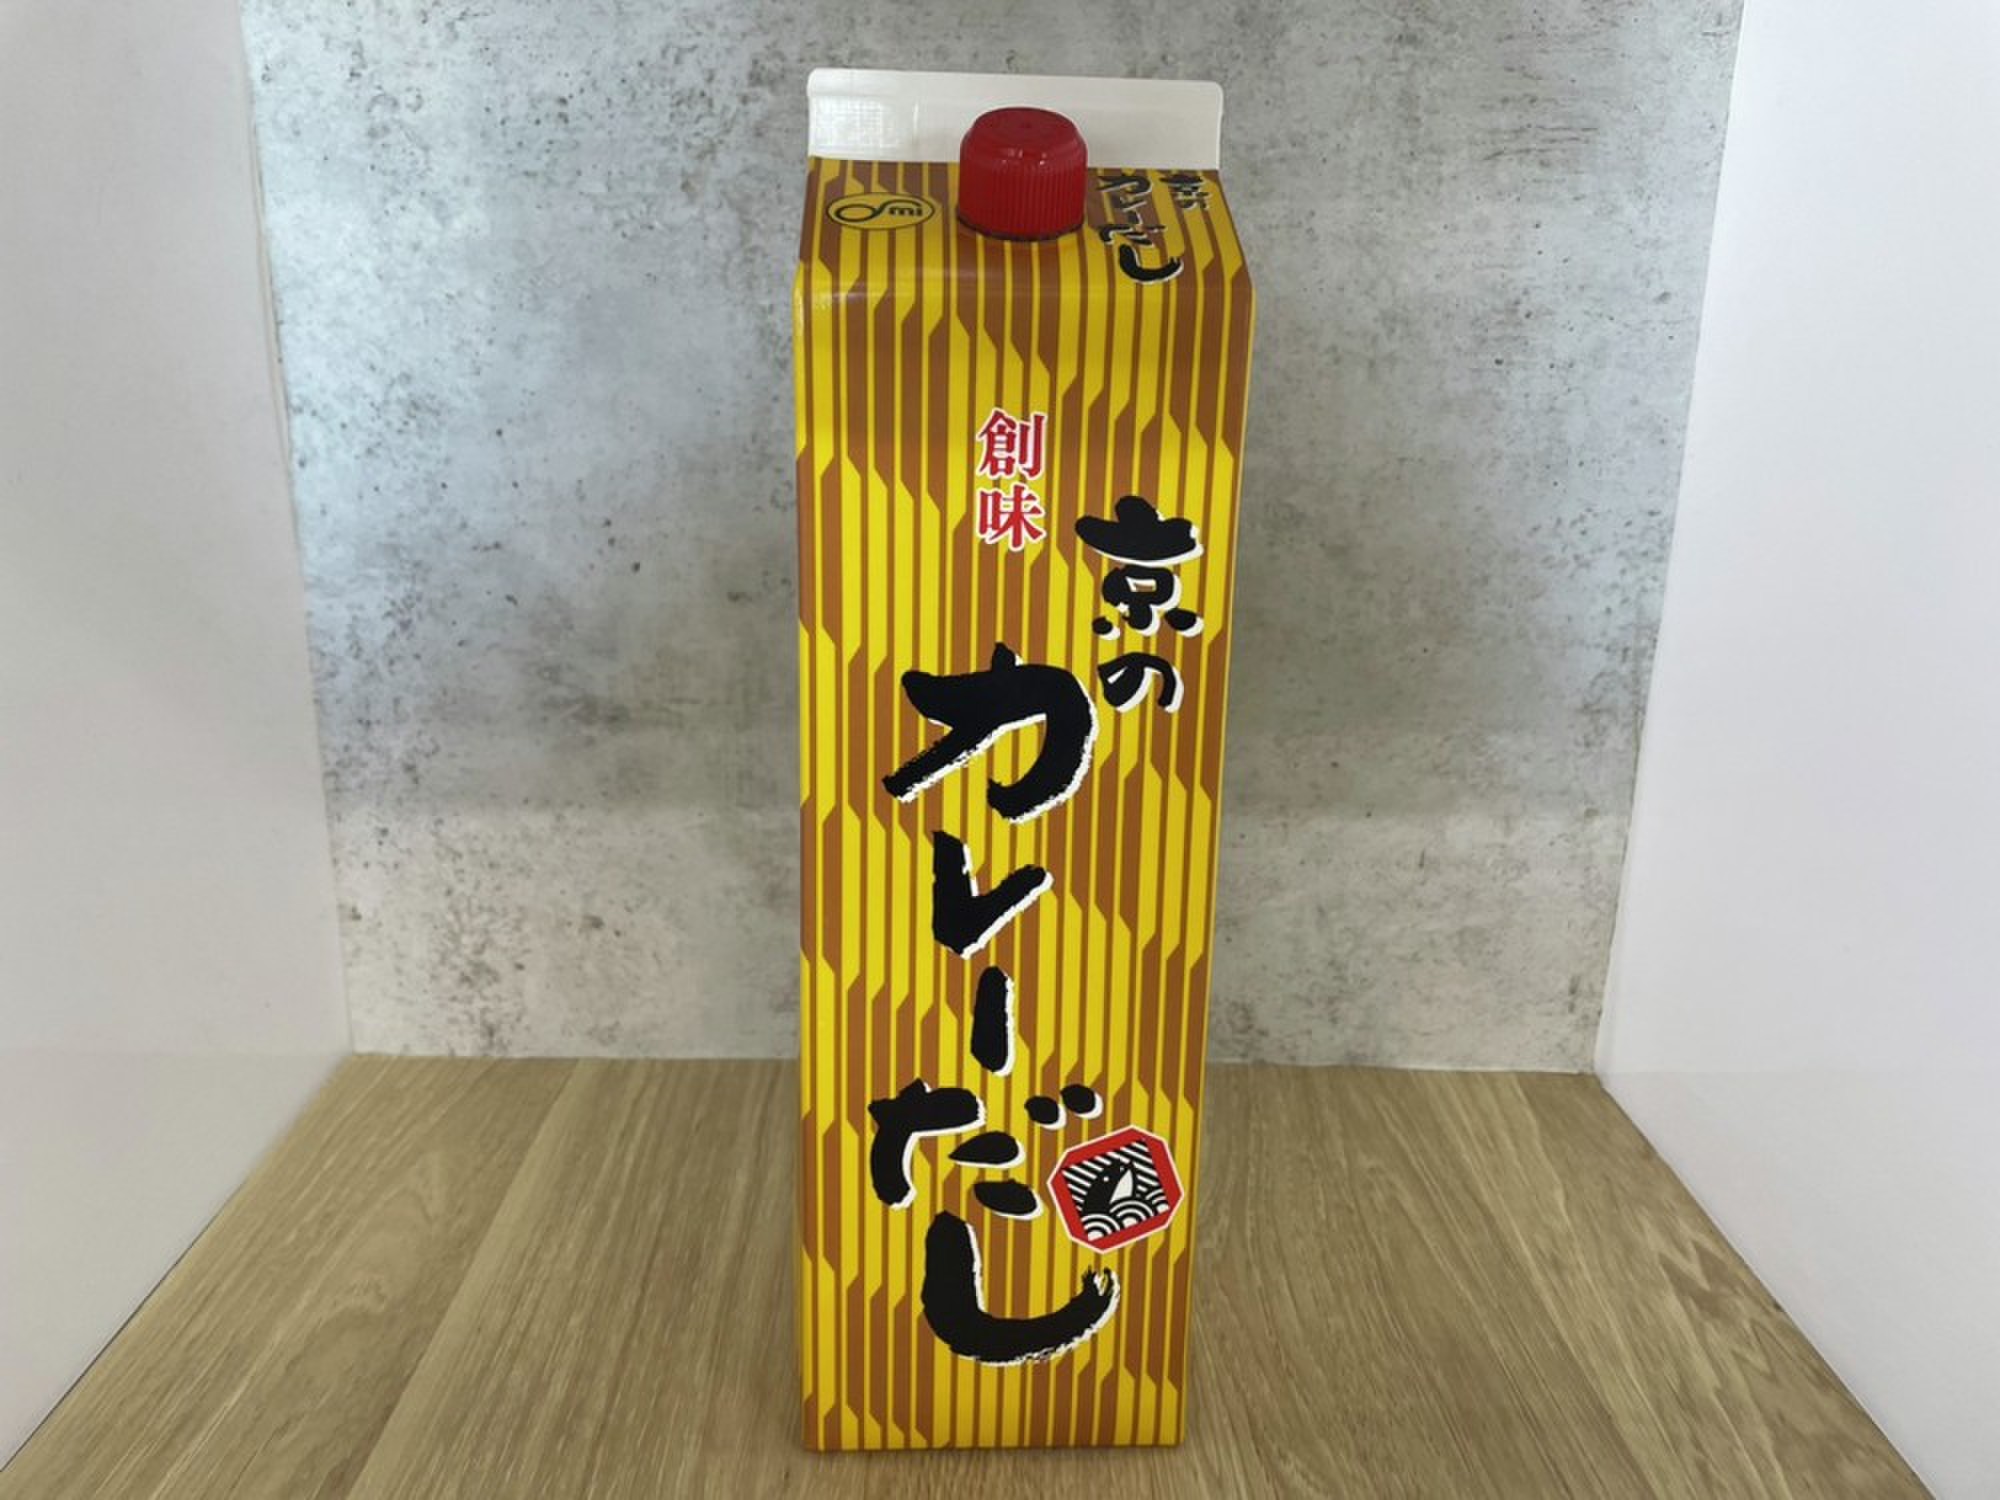 創味 京のカレーだし 1.8L | クックパッドマート - 毎日が楽しみになる、お買いもの。